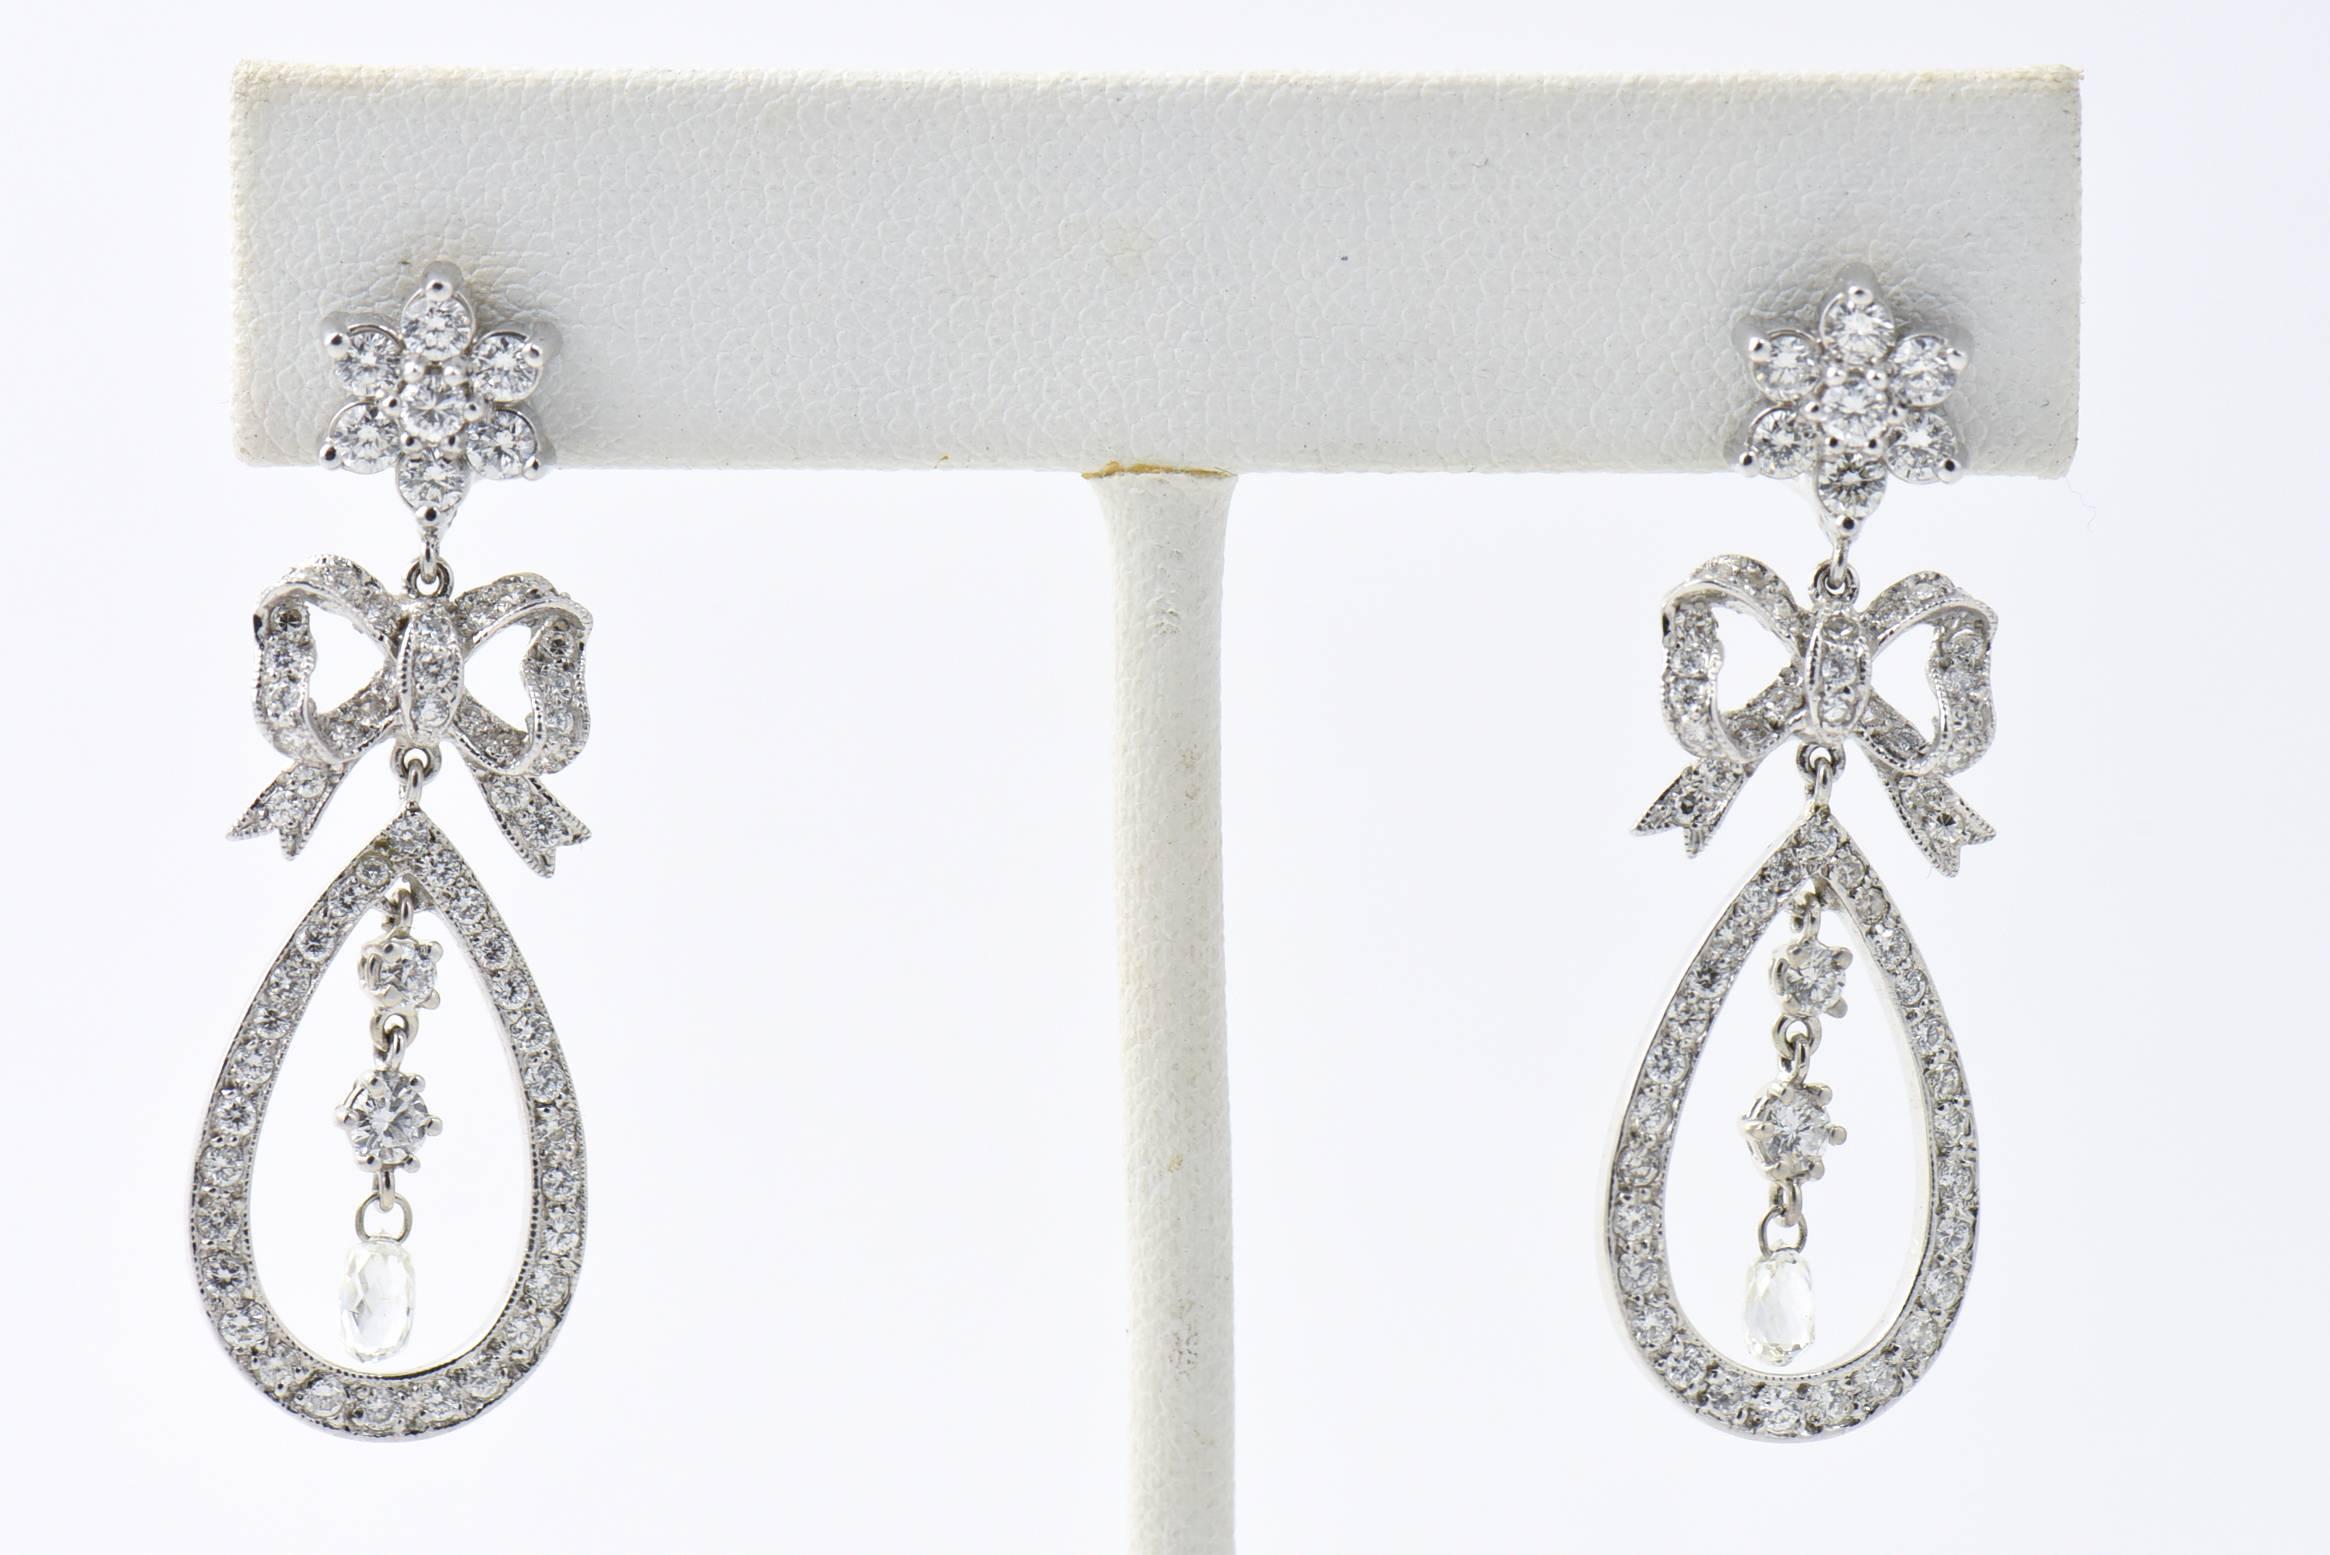 Belle Époque Style Delicate Diamond Bow and Flower Drop Ohrringe aus 18 Karat Weißgold mit 1,92 Karat an runden Diamanten und 0,61 Karat an  roh geschliffene Briollets mit einem ungefähren Gesamtgewicht von 2,53.  

Diese Ohrringe sind perfekt für